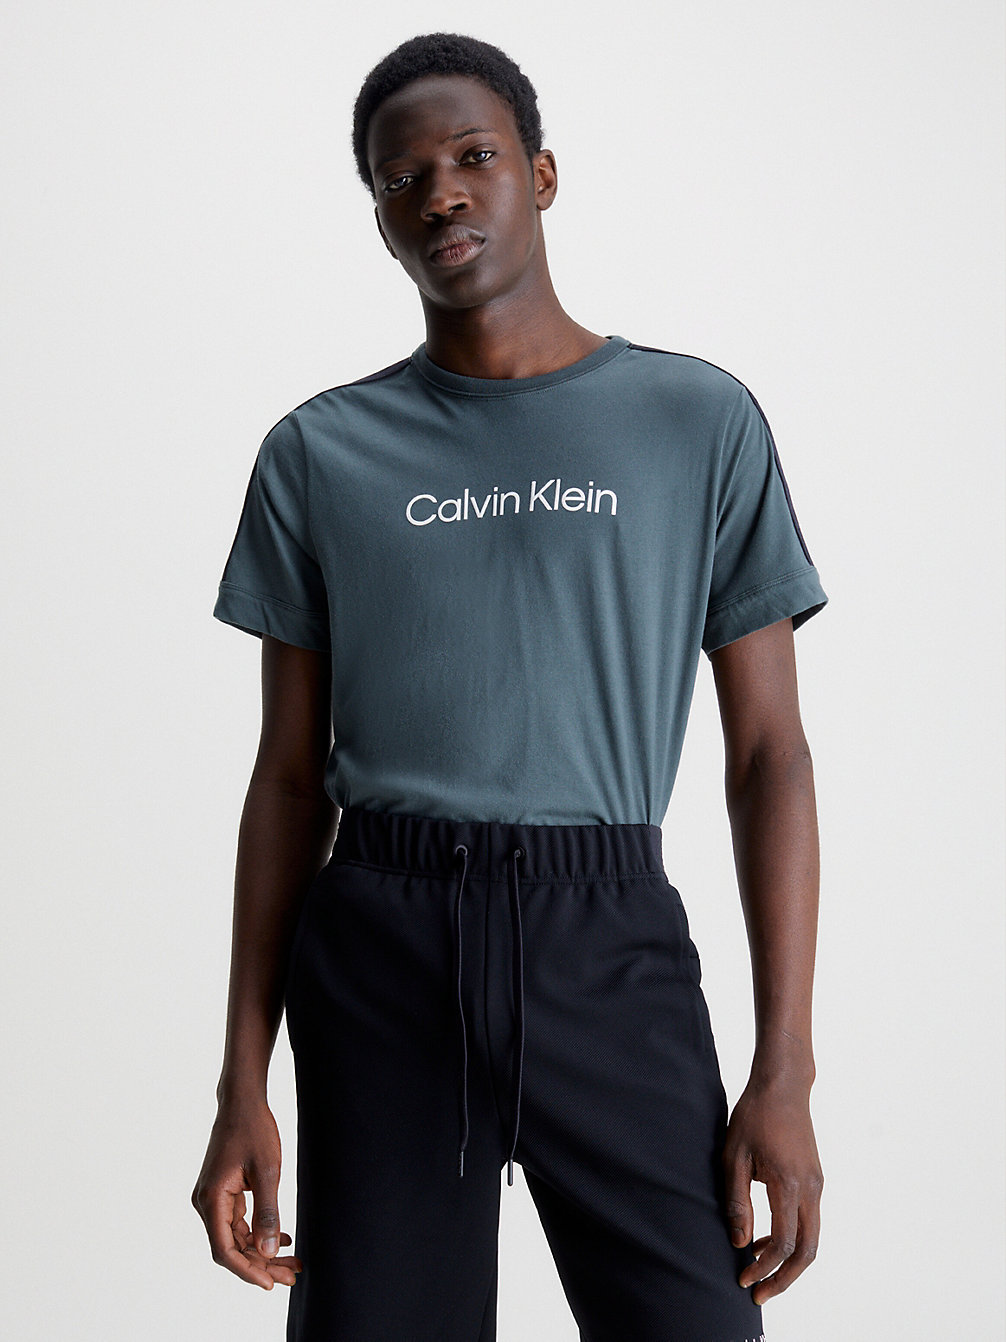 URBAN CHIC Soft Gym T-Shirt undefined men Calvin Klein